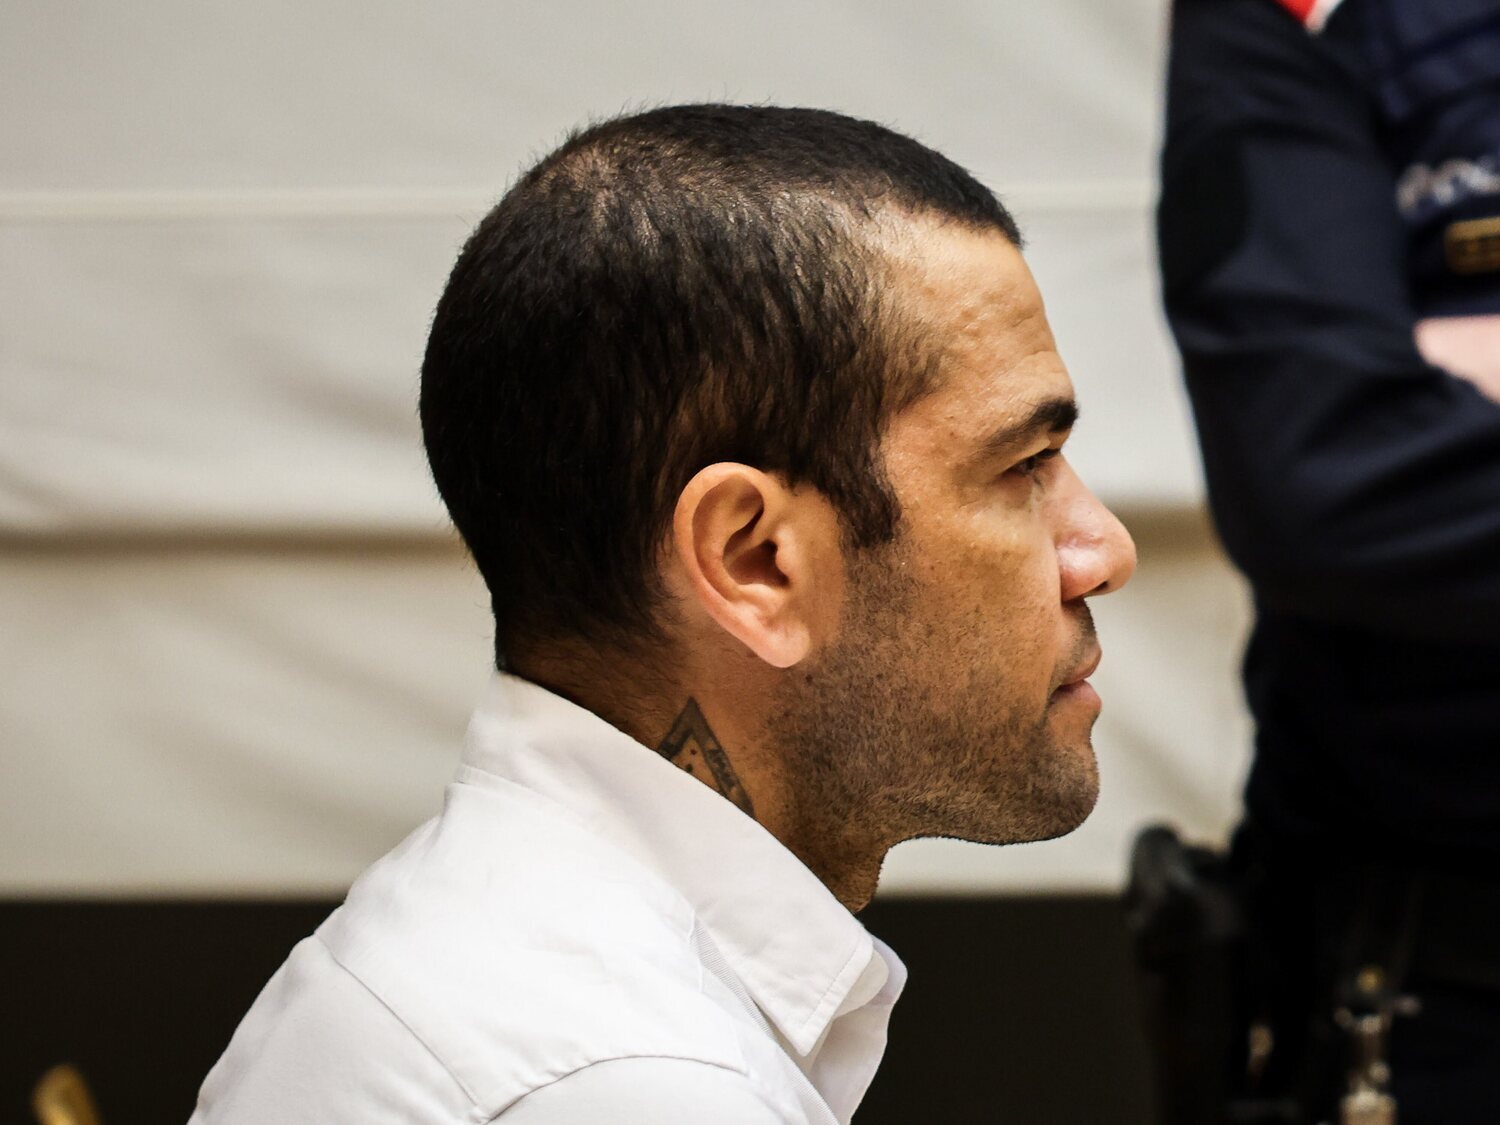 Dani Alves, condenado a 4 años y medio de prisión por agresión sexual